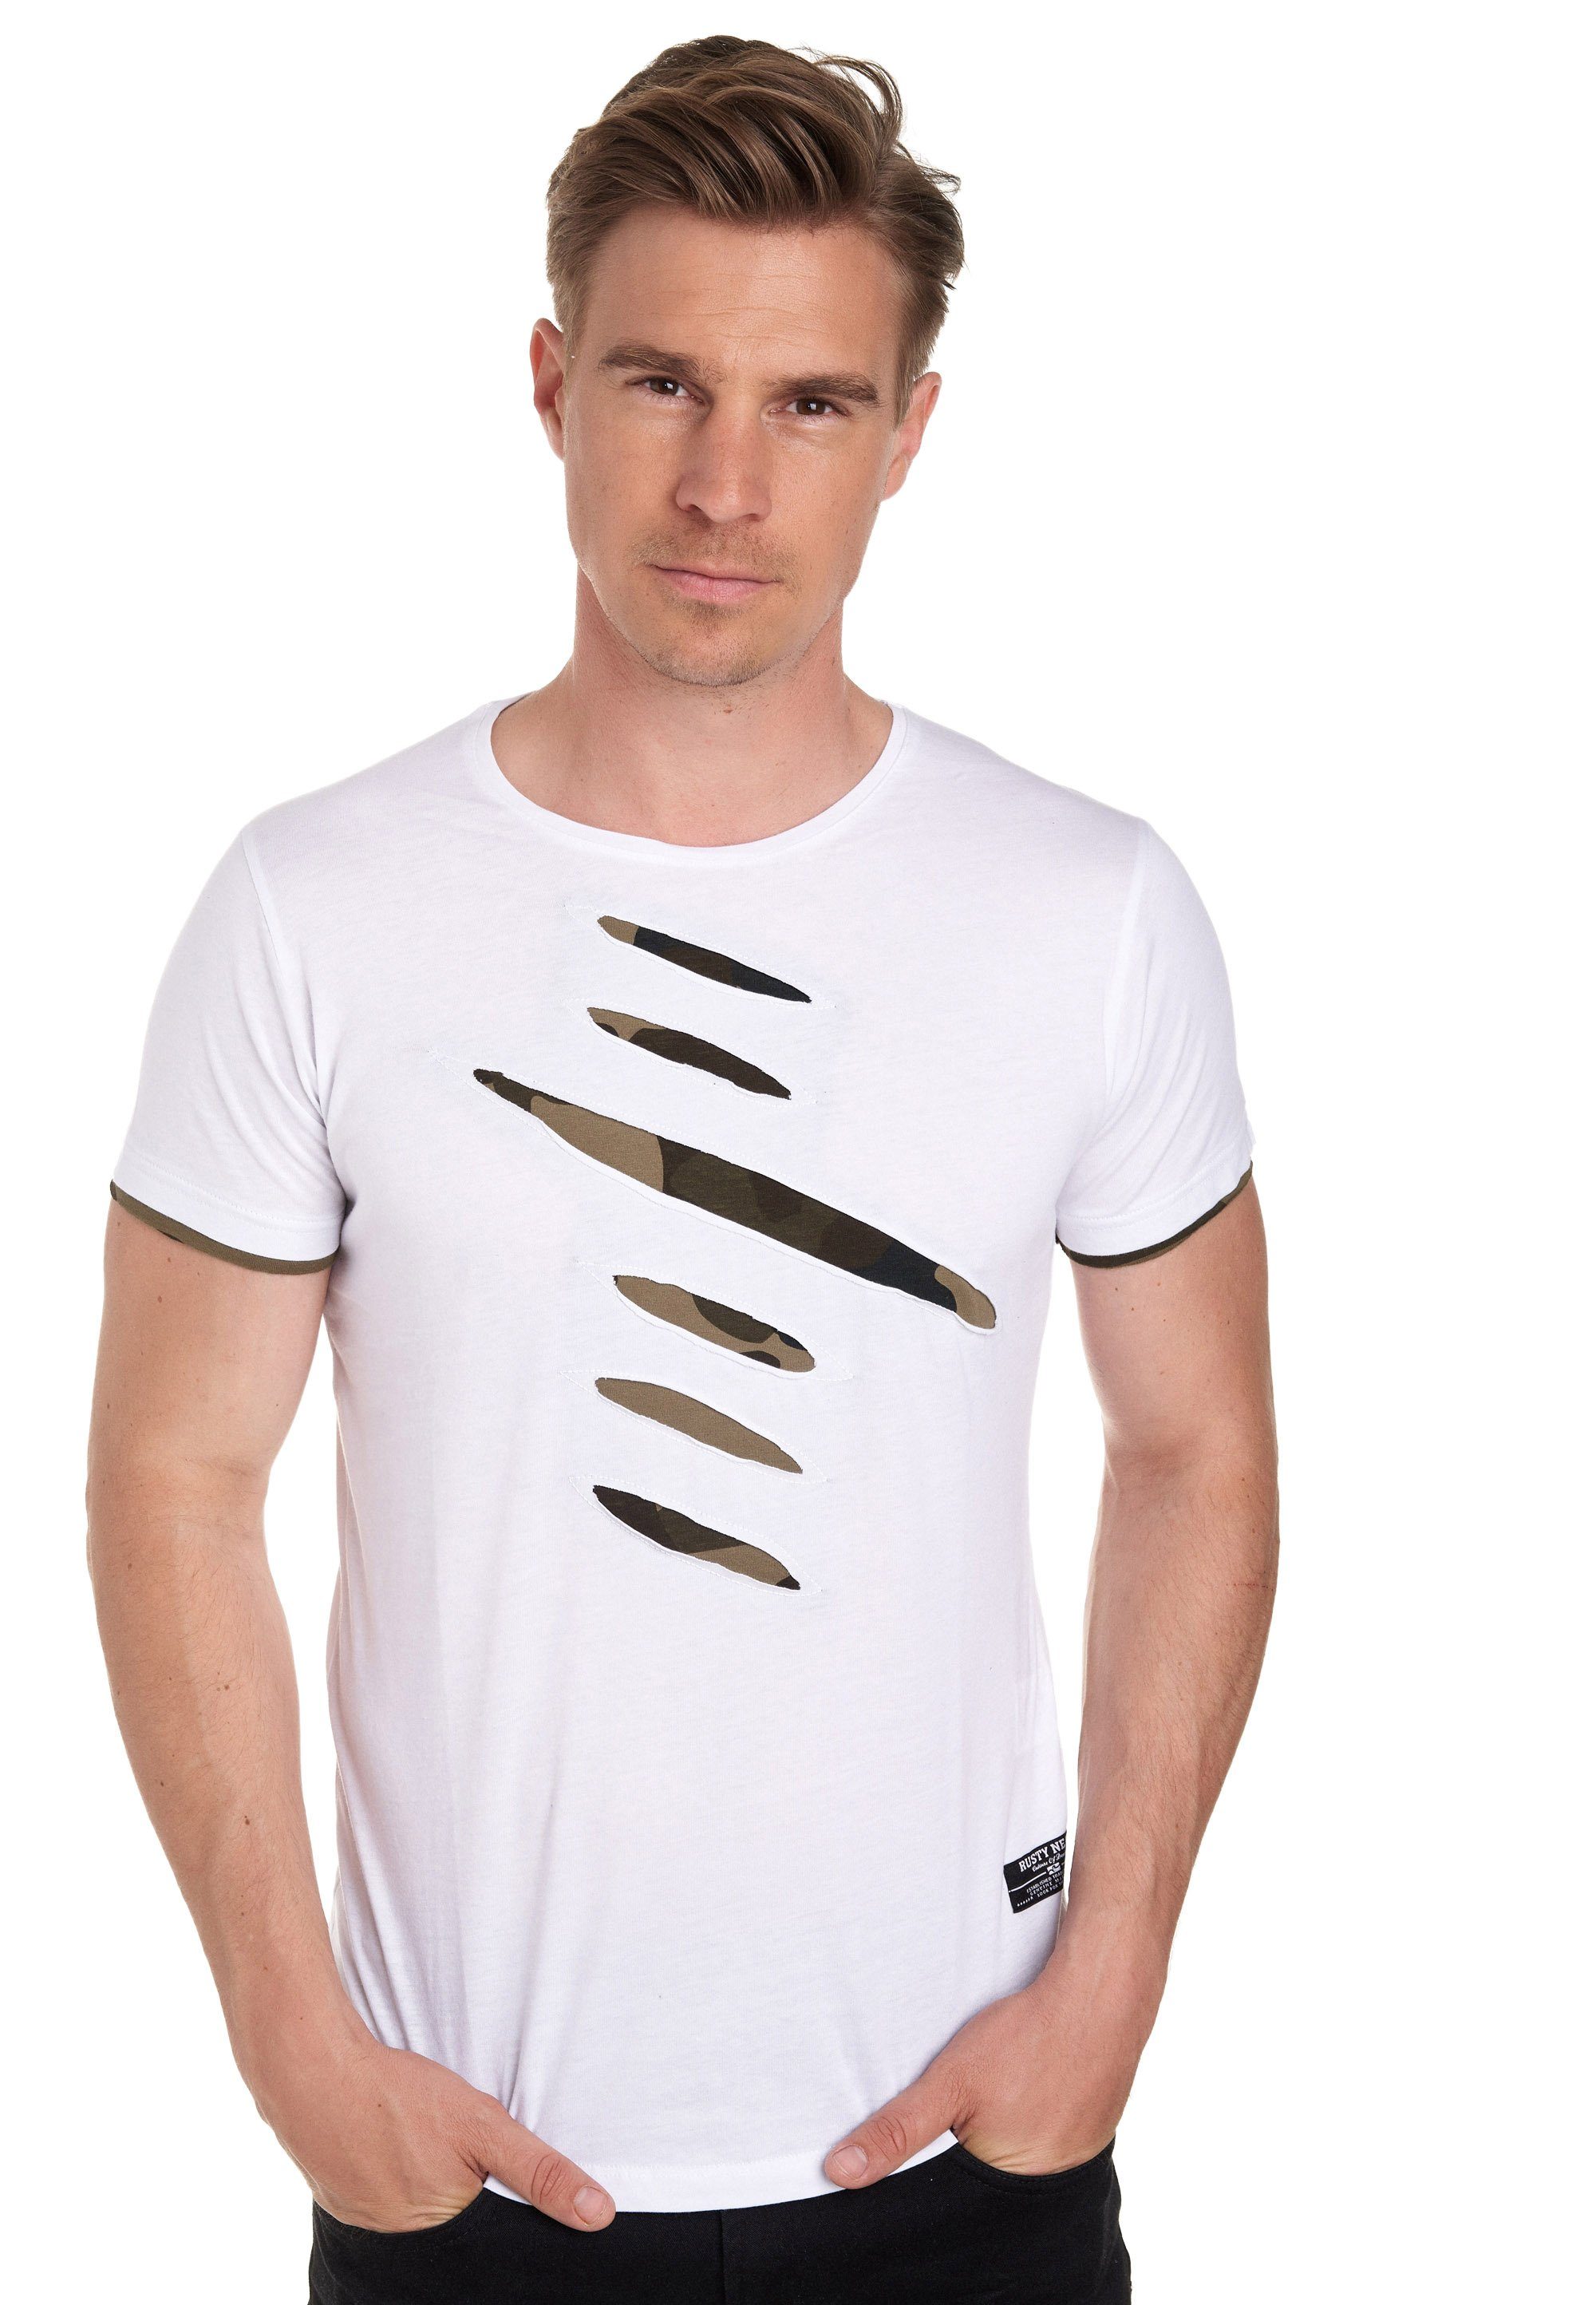 trendigen 2-in-1-Design Rusty Neal im weiß T-Shirt